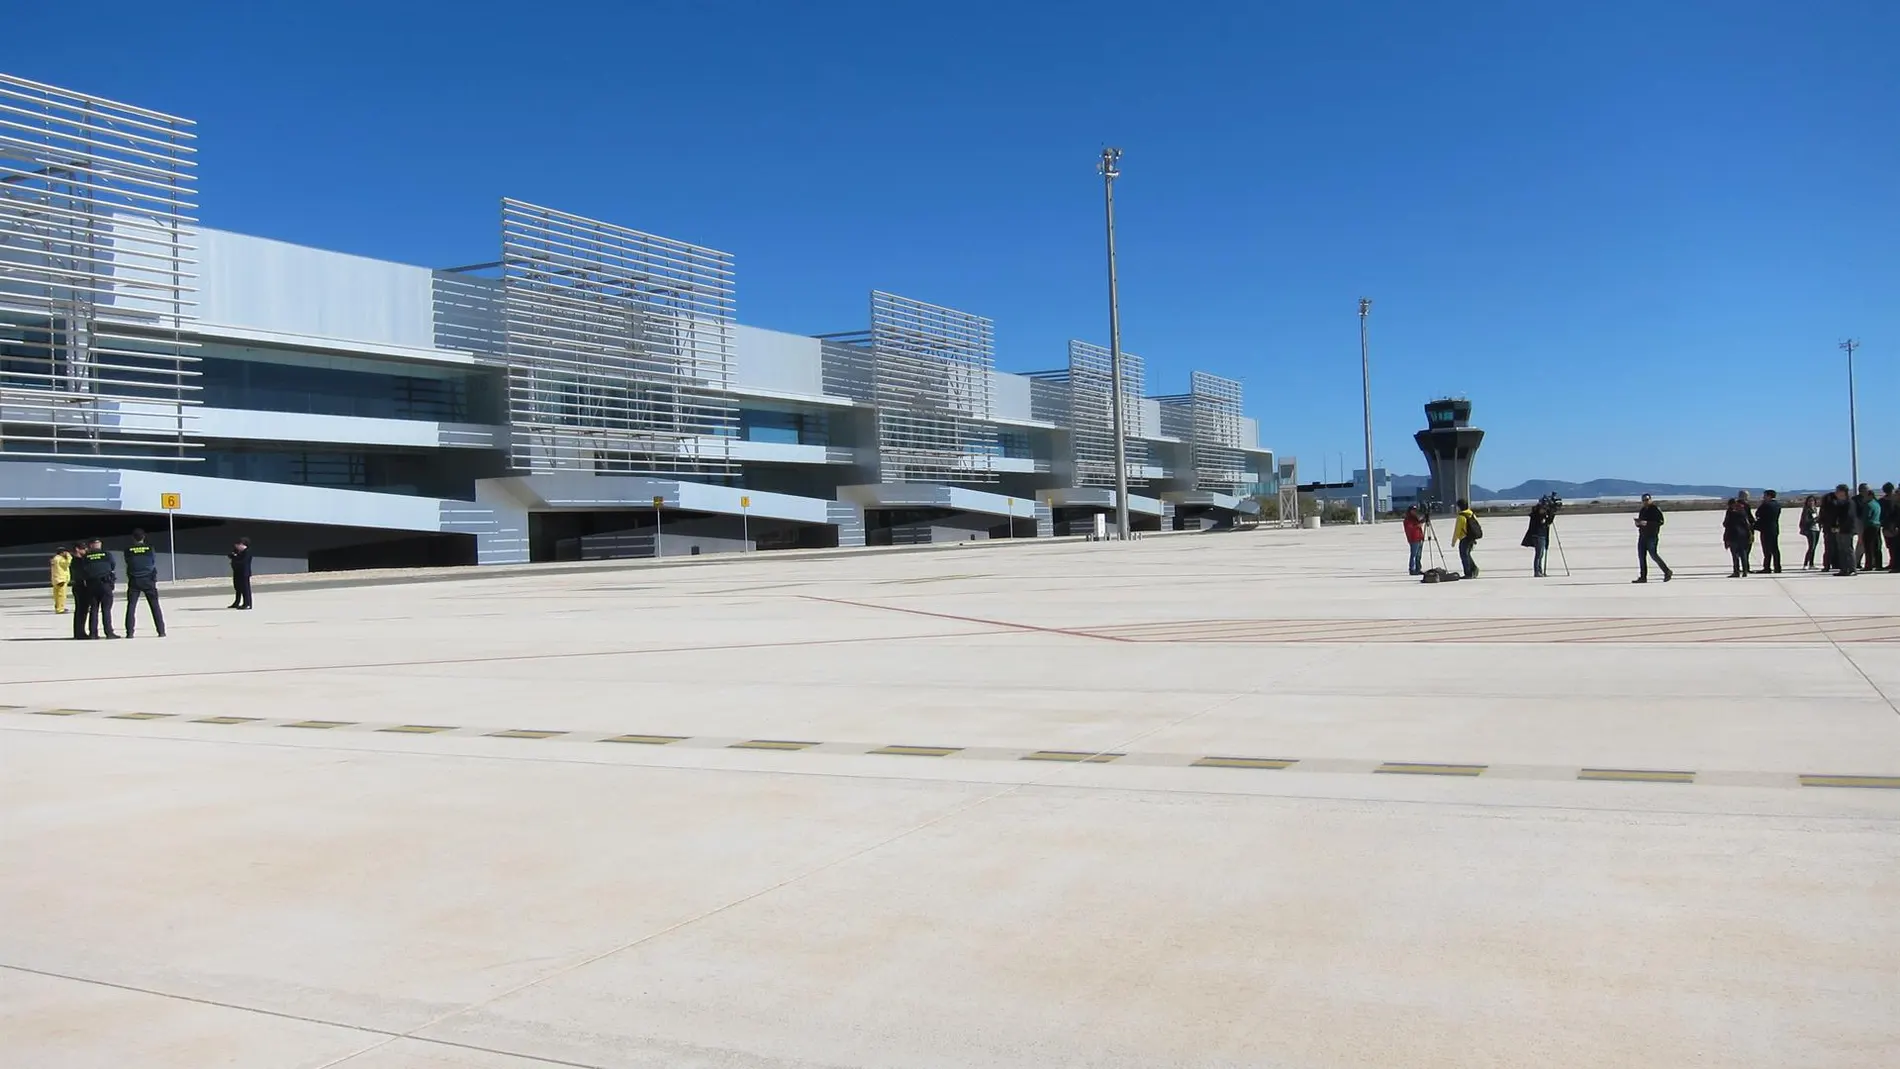 El Aeropuerto Internacional de la Región de Murcia abrió sus puertas hace apenas unas semanas en Corvera